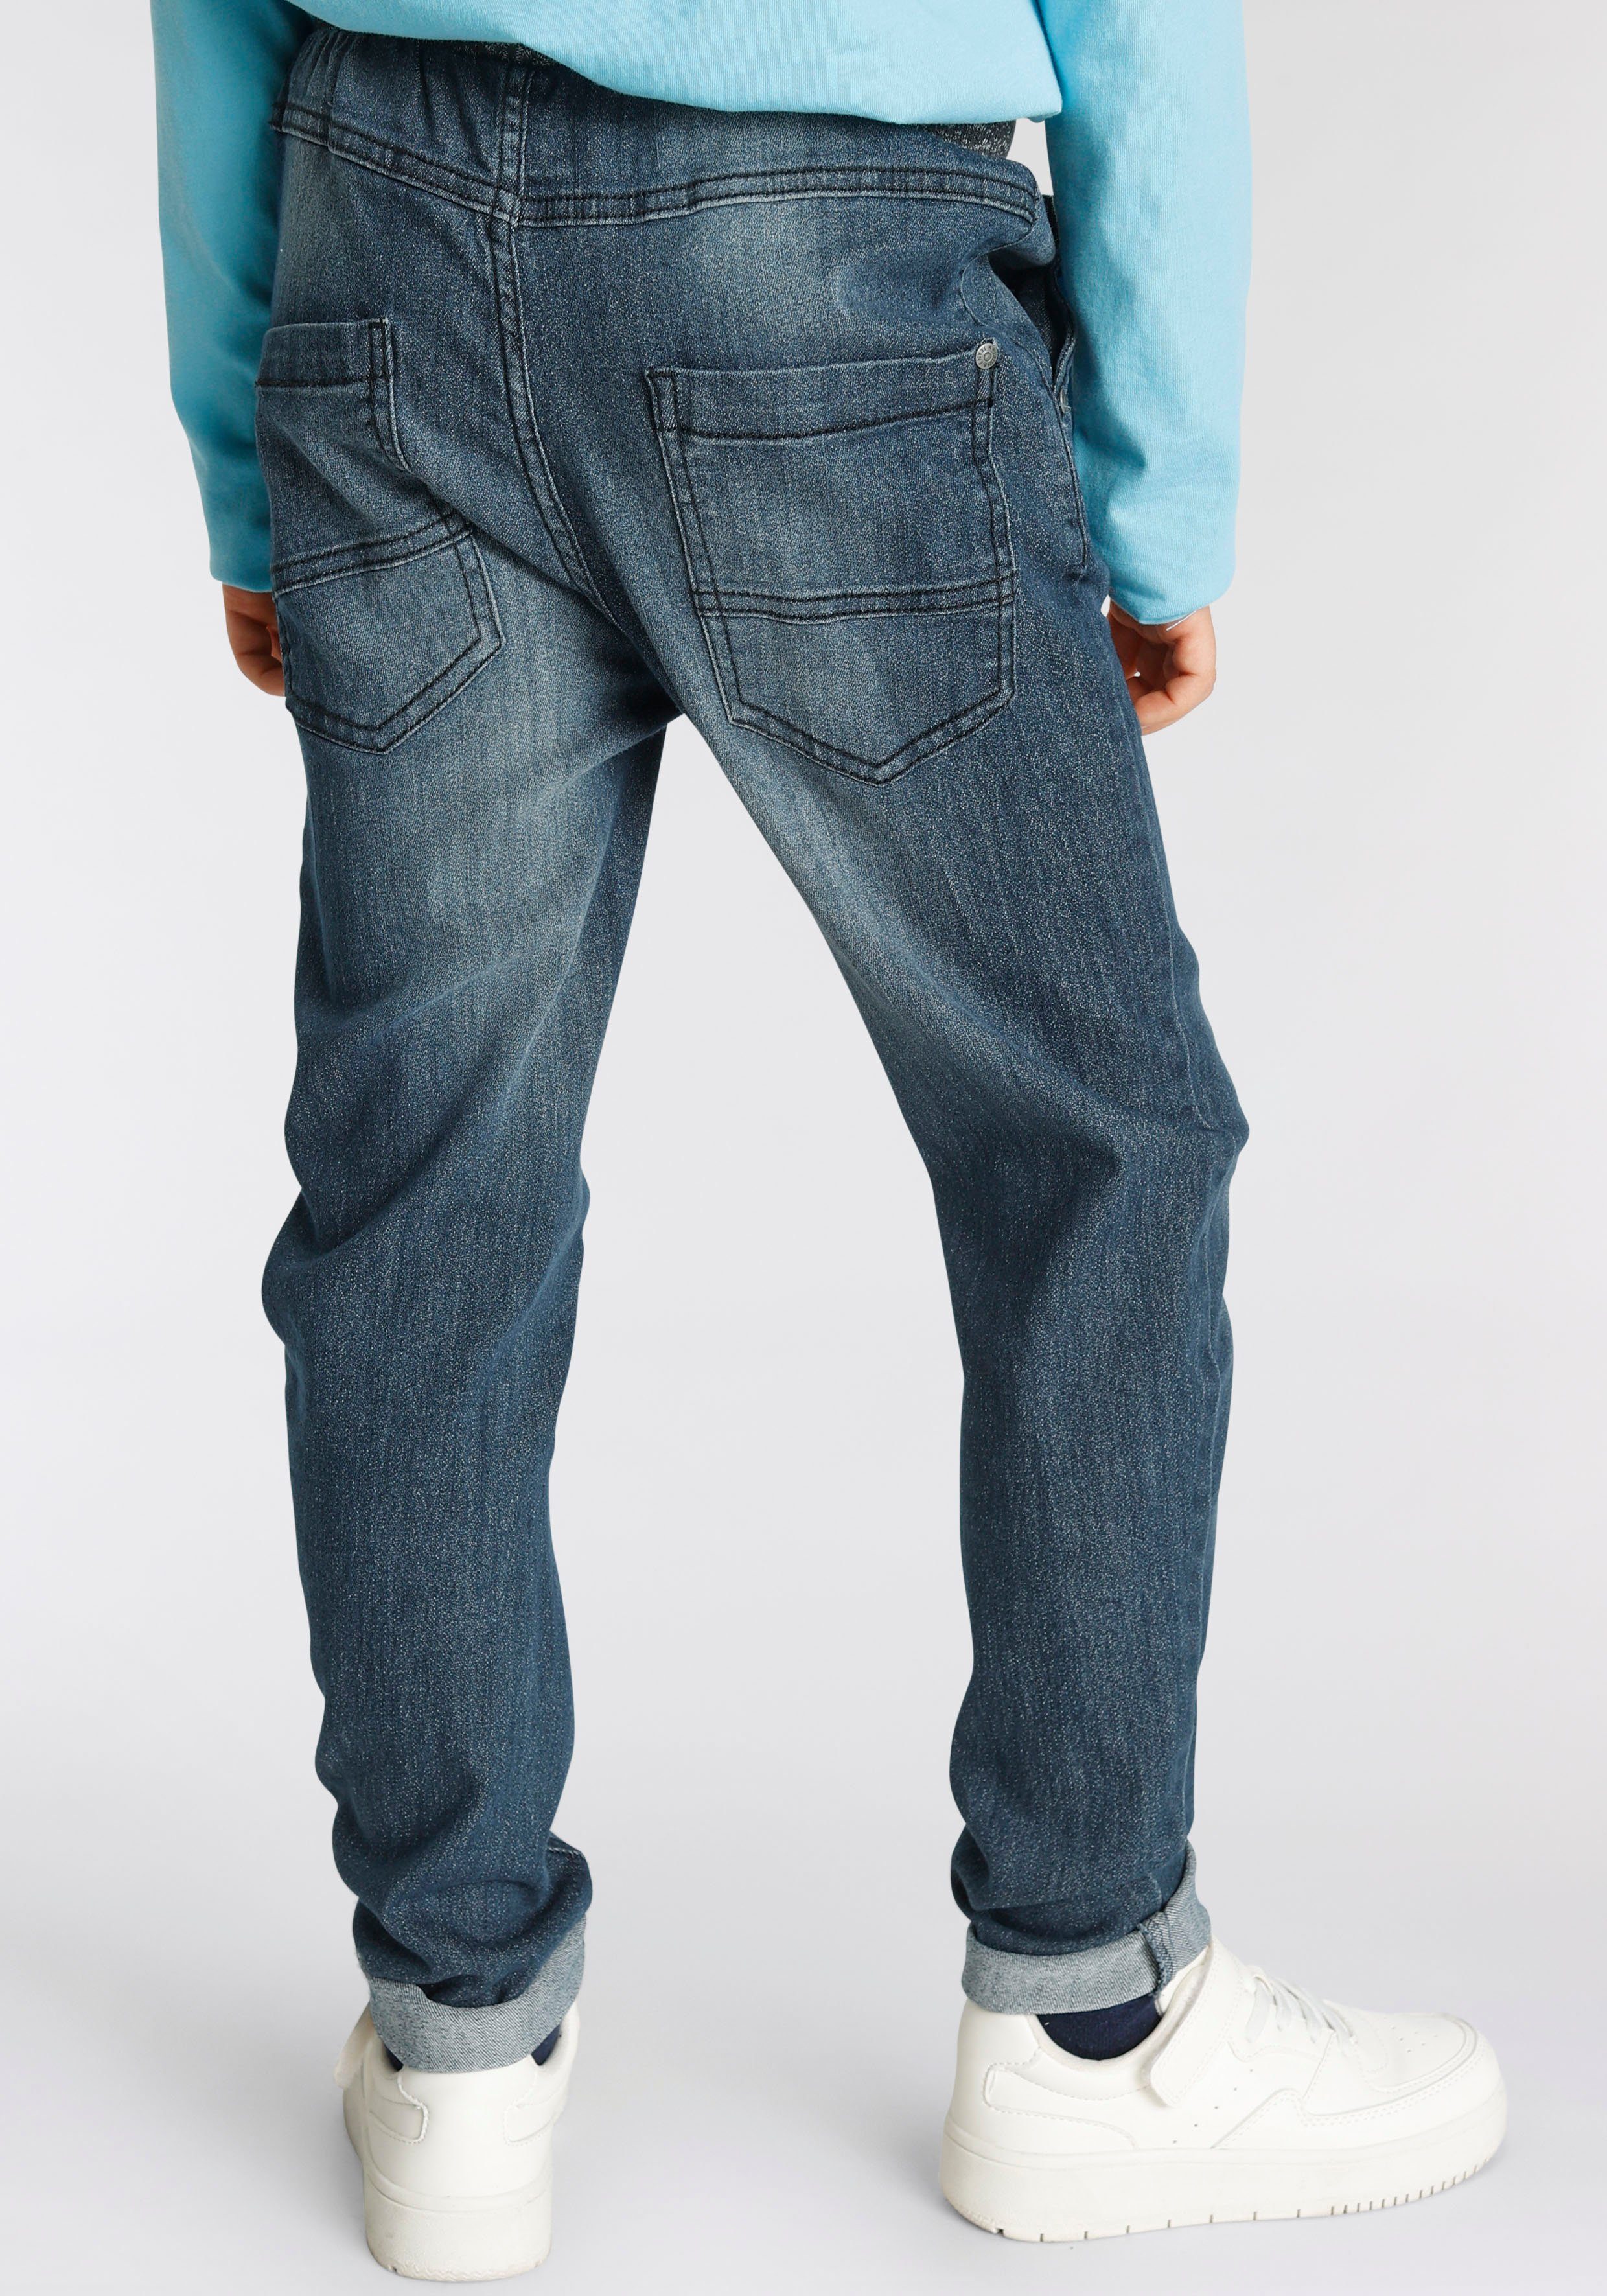 schmalem Stretch-Jeans tollem mit Arizona Rippenbund mit Beinverlauf